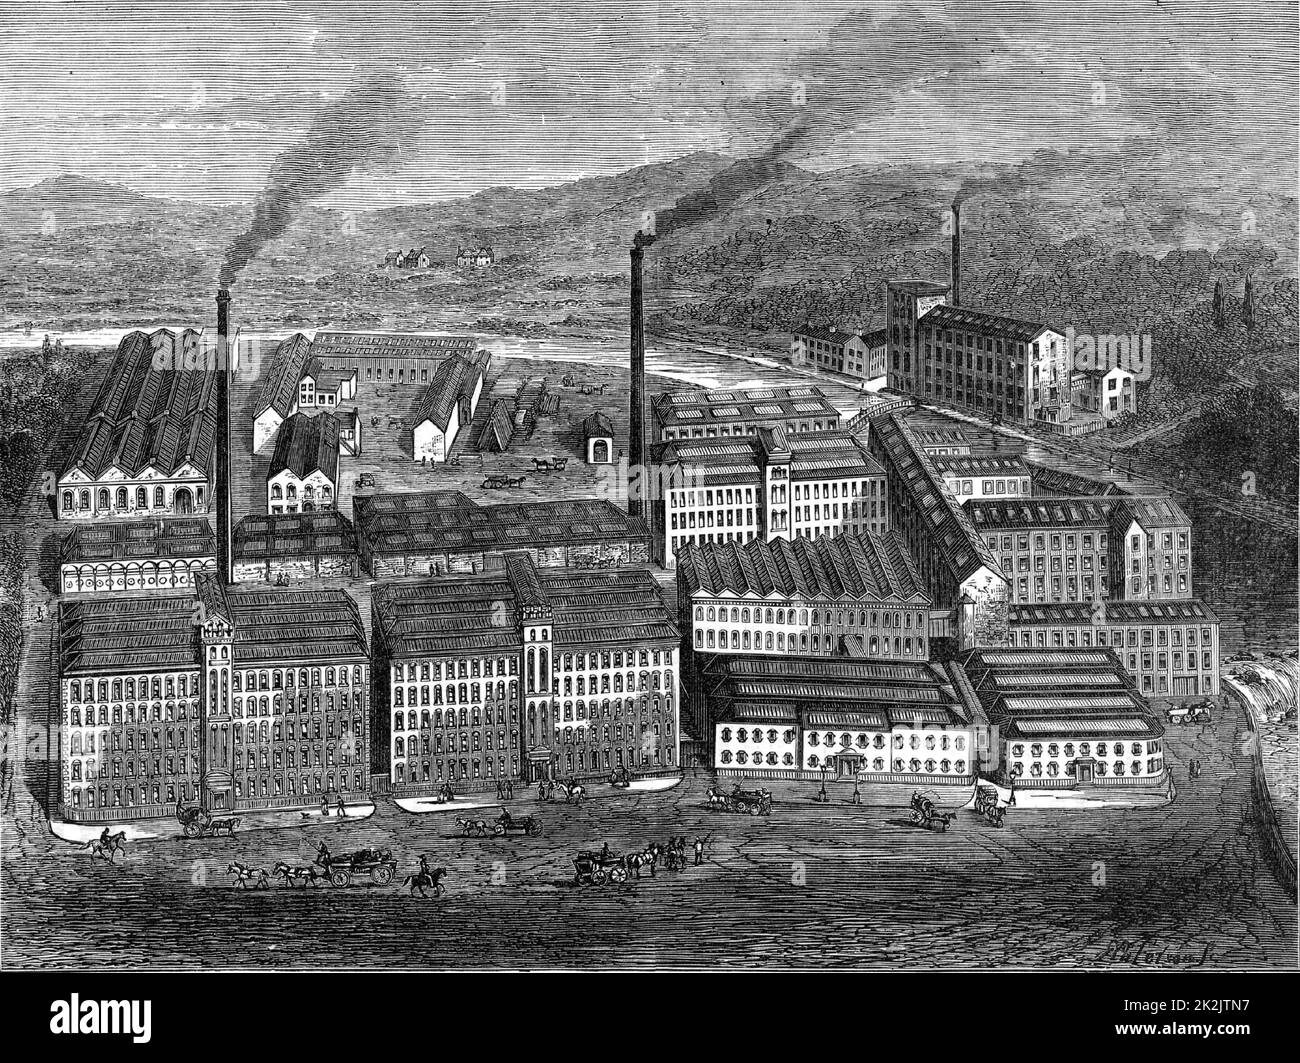 J & J Clark's Anchor Thread Works, Paisley, Renfrewshire, Schottland. Clarks waren seit mehr als einem Jahrhundert für ihre Nähfäden und merzerisierte Baumwolle bekannt. Aus „Great Industries of Great Britain“ (London, c1880). Gravur. Stockfoto